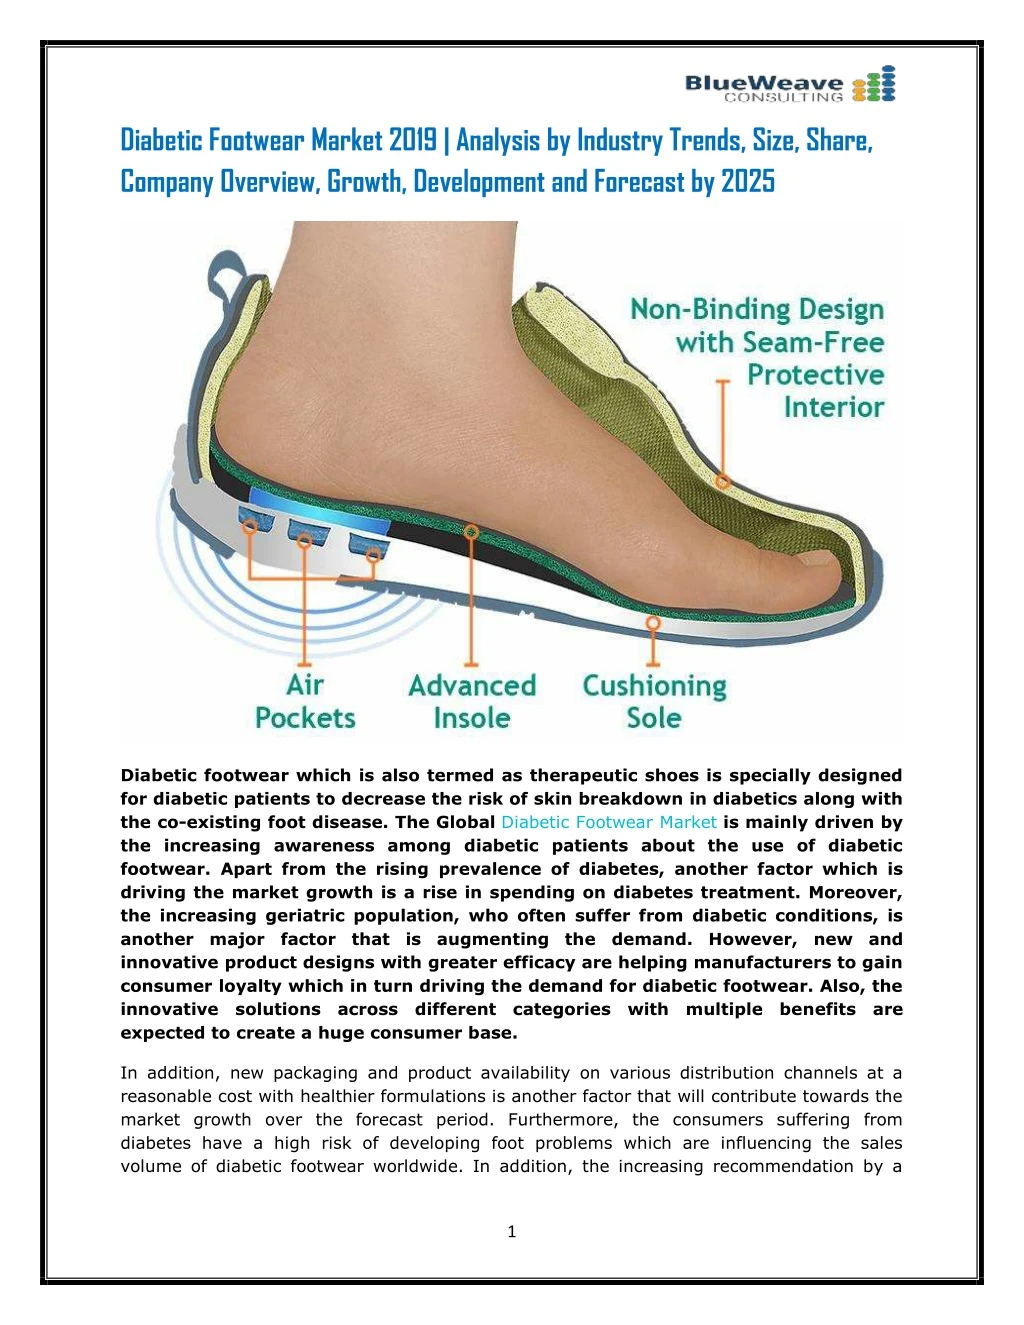 diabetic footwear market 2019 analysis